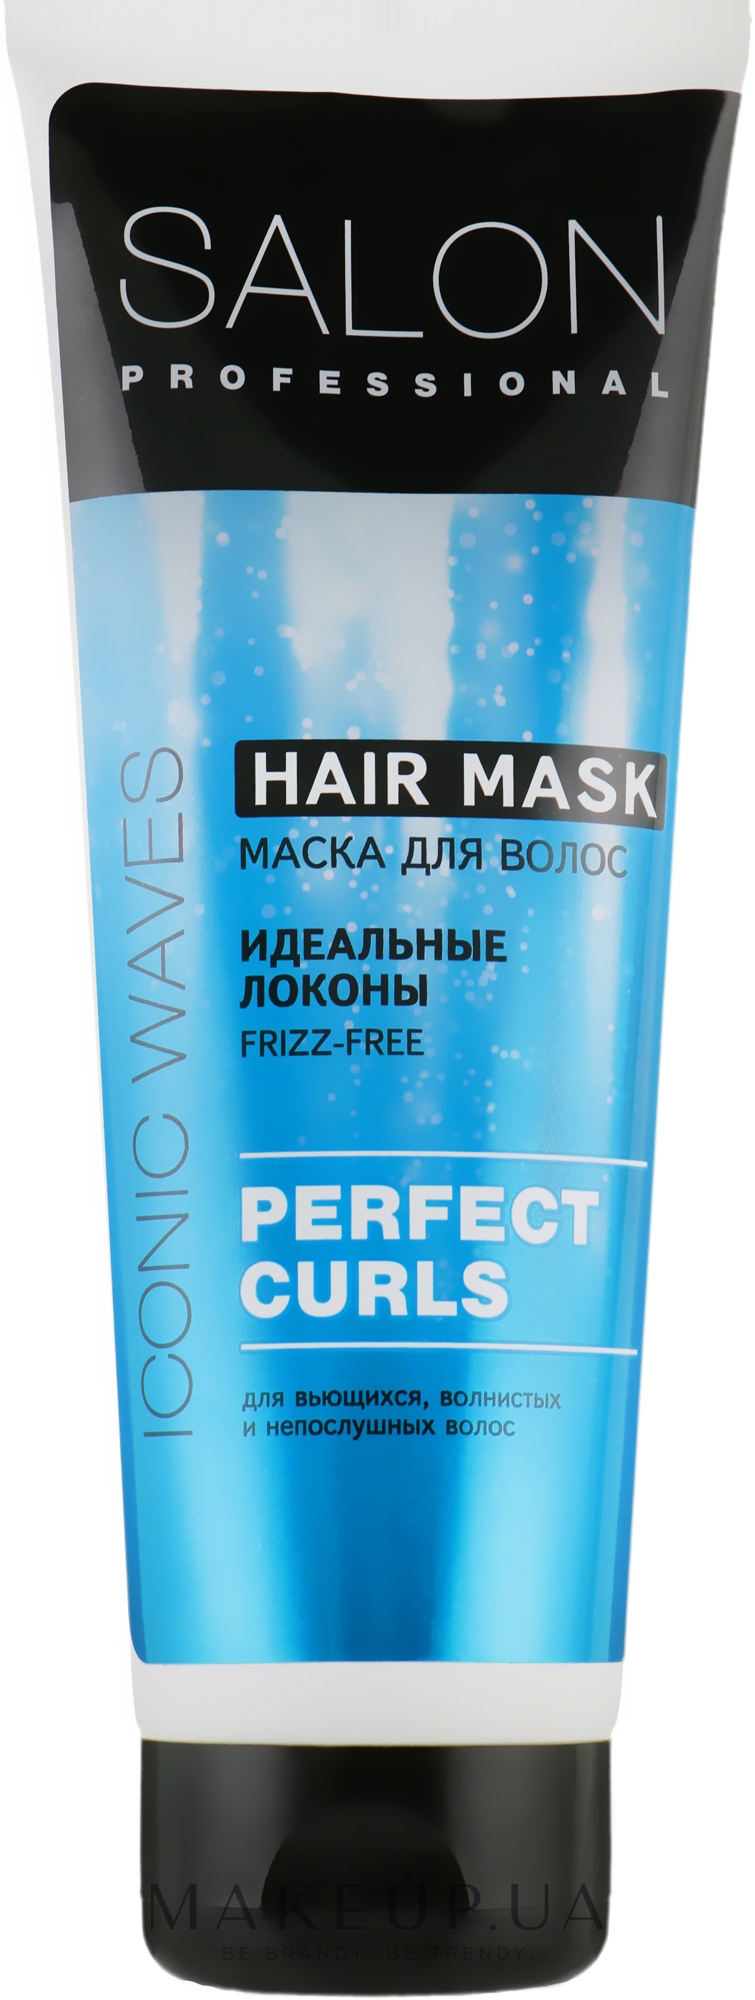 Маска для волос "Идеальные локоны" - Salon Professional Hair Mask Perfect Curls — фото 250ml